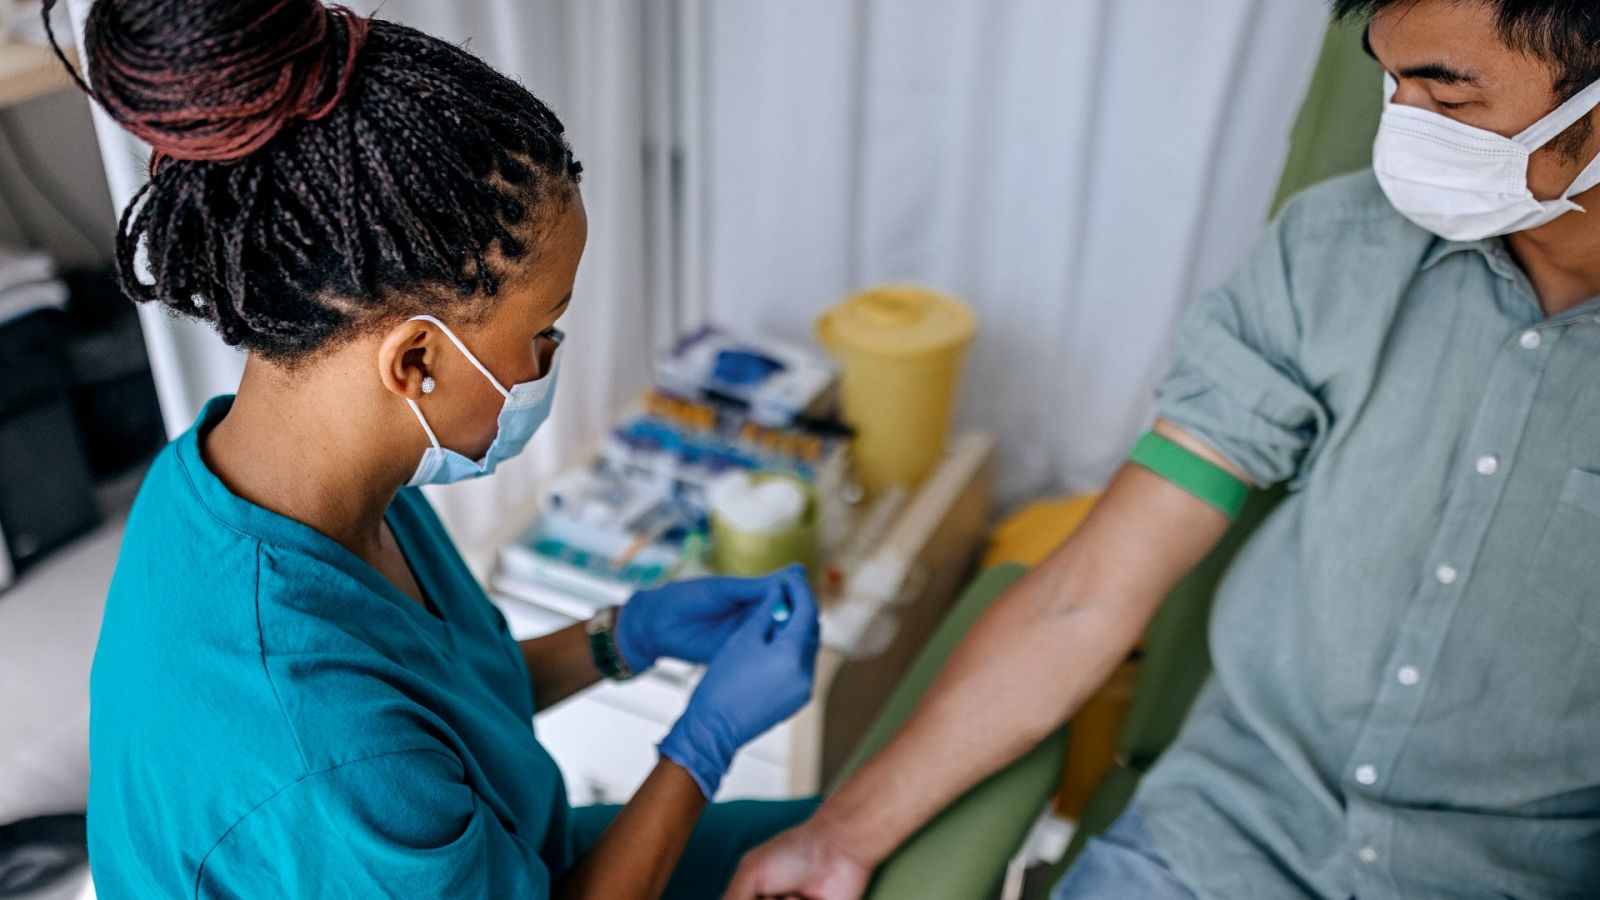 Una enfermera se prepara para administrar un fármaco o sacar sangre a un paciente, en una imagen de archivo.